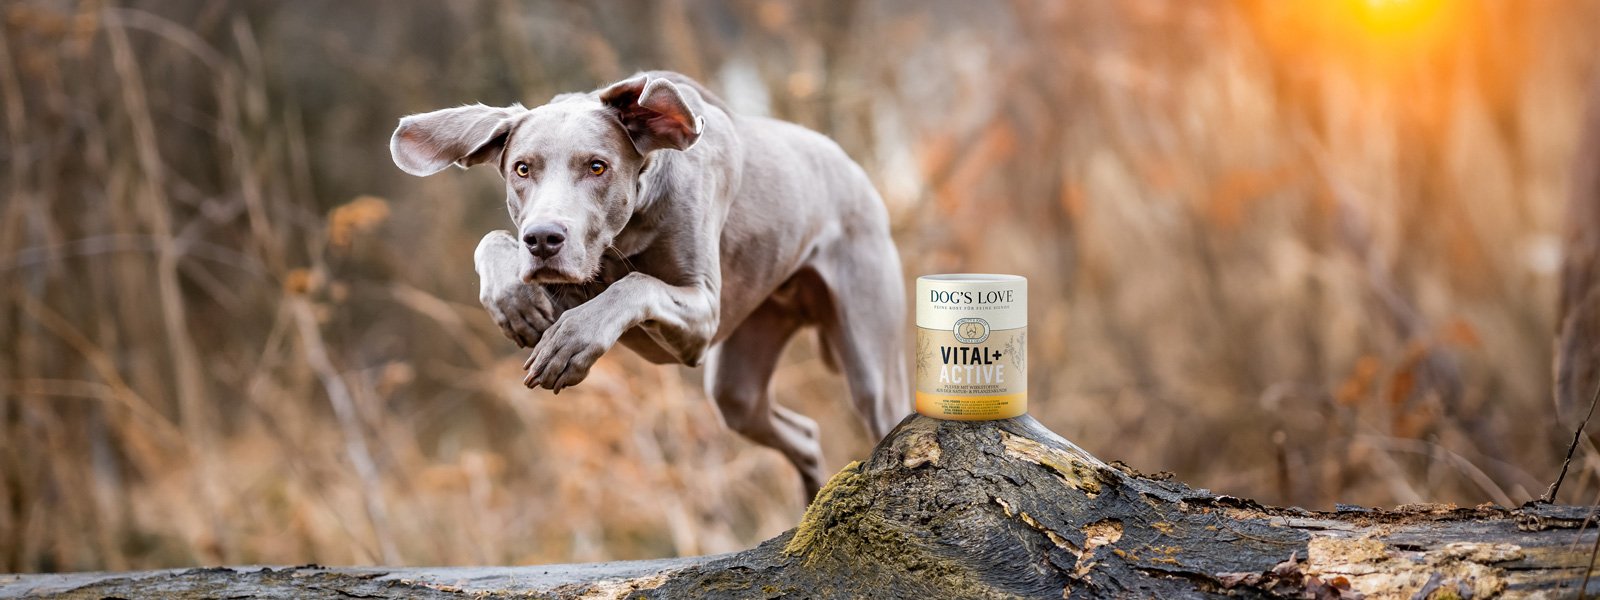 Ein Hund der über einen Holzstamm springt auf dem eine Dose DOG'S LOVE Vital Pulver steht